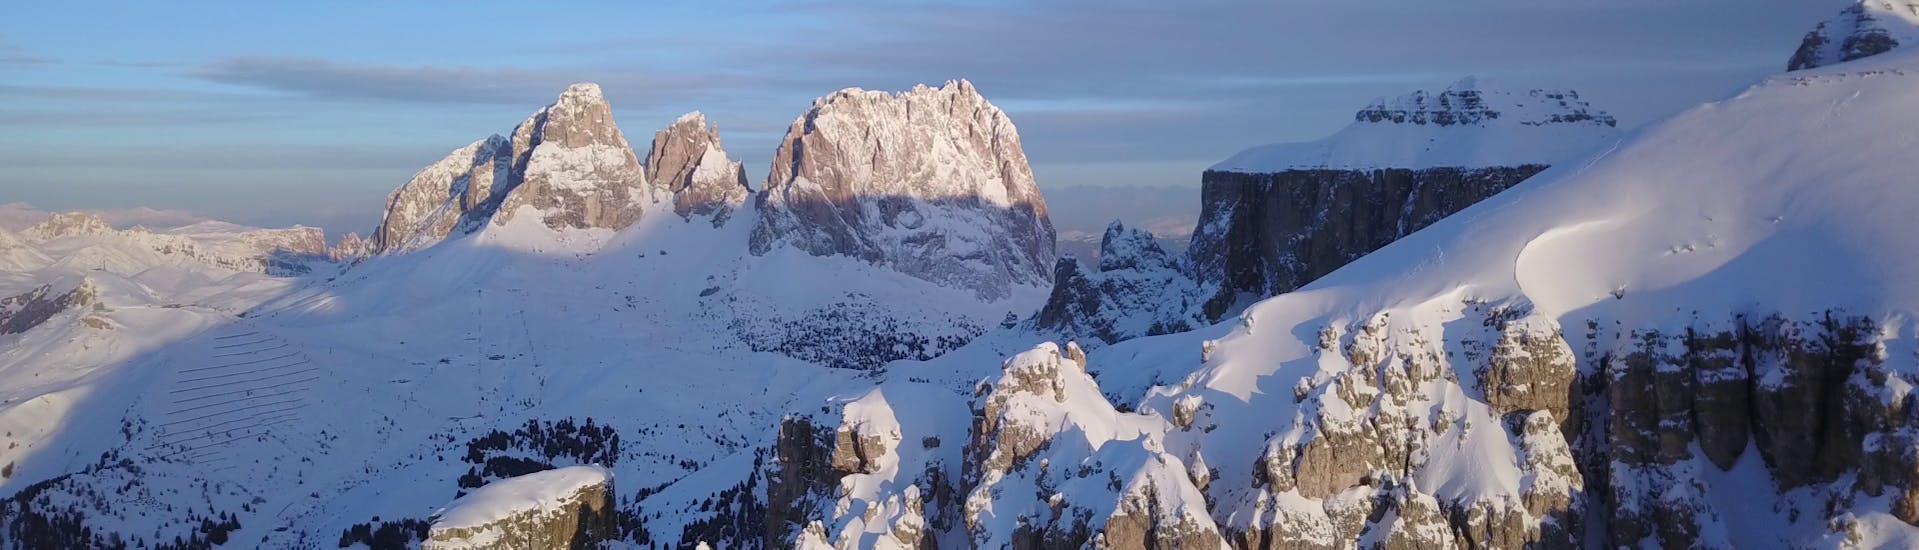 Una bellissima vista delle Dolomiti dalle piste di sci di Arabba durante le lezioni di sci con Scuola Italiana Sci Arabba.